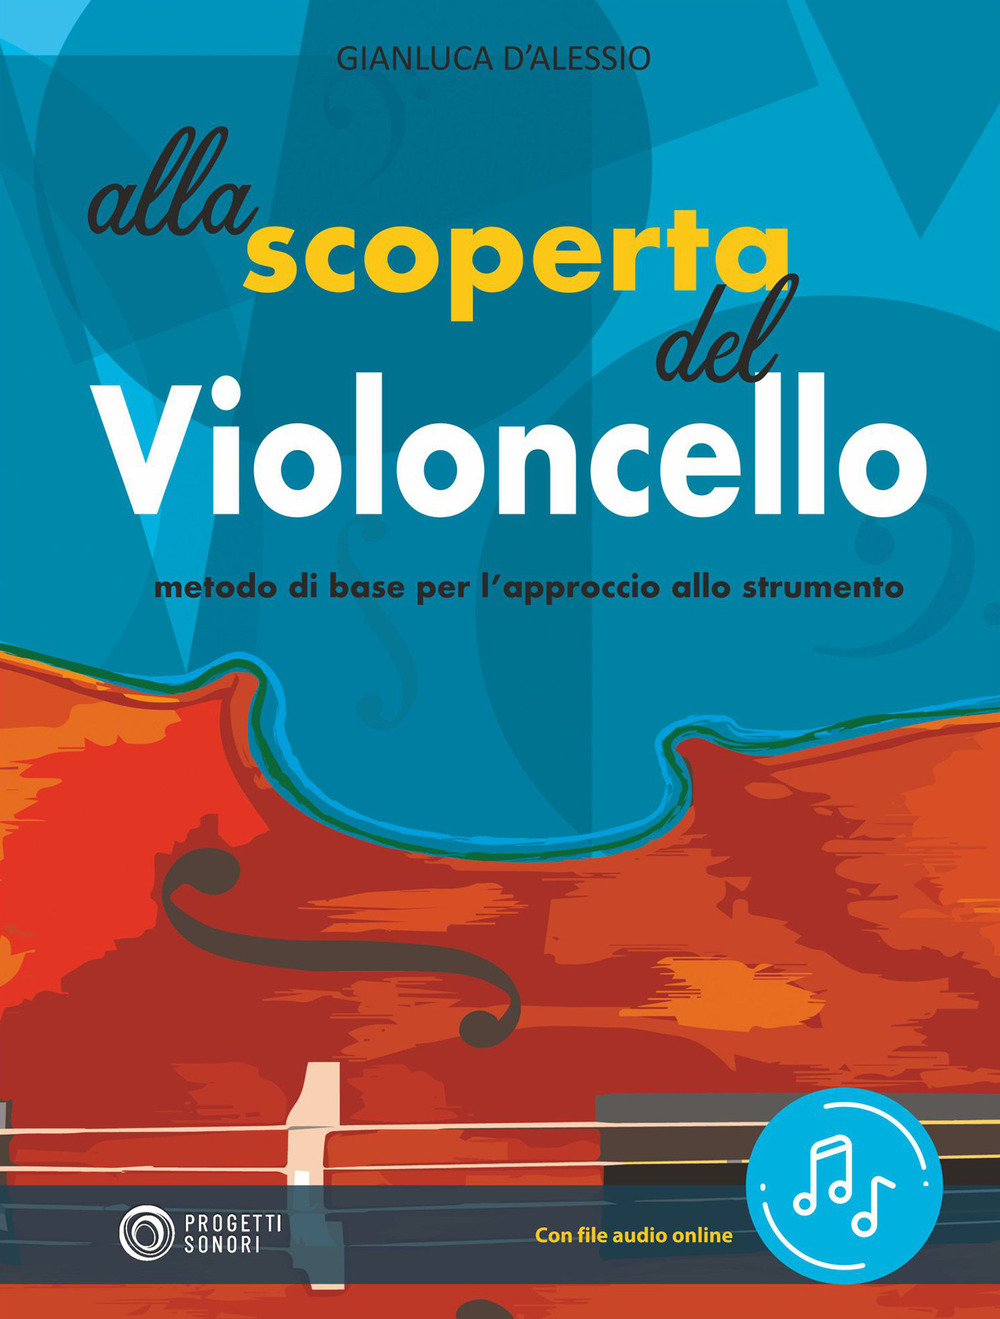 Libri D'Alessio Gianluca - Alla Scoperta Del Violoncello. Con File Audio In Streaming NUOVO SIGILLATO, EDIZIONE DEL 01/09/2021 SUBITO DISPONIBILE